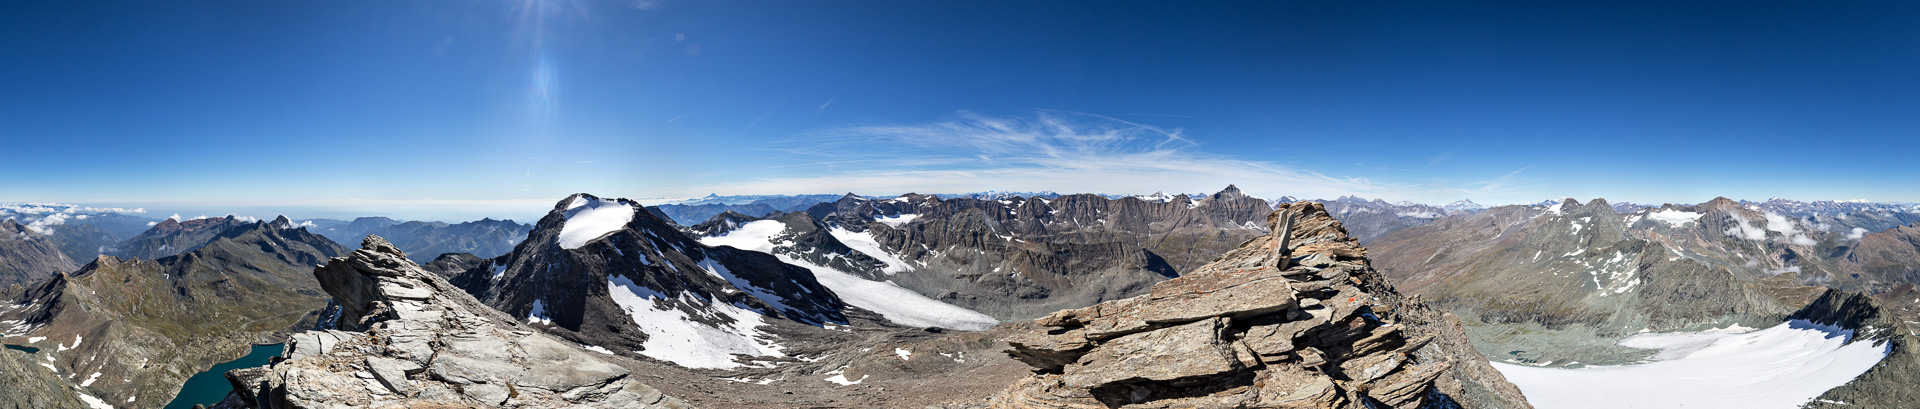 Herrliches Gipfelpanorama in einem der hintersten Winkel der Maurienne.